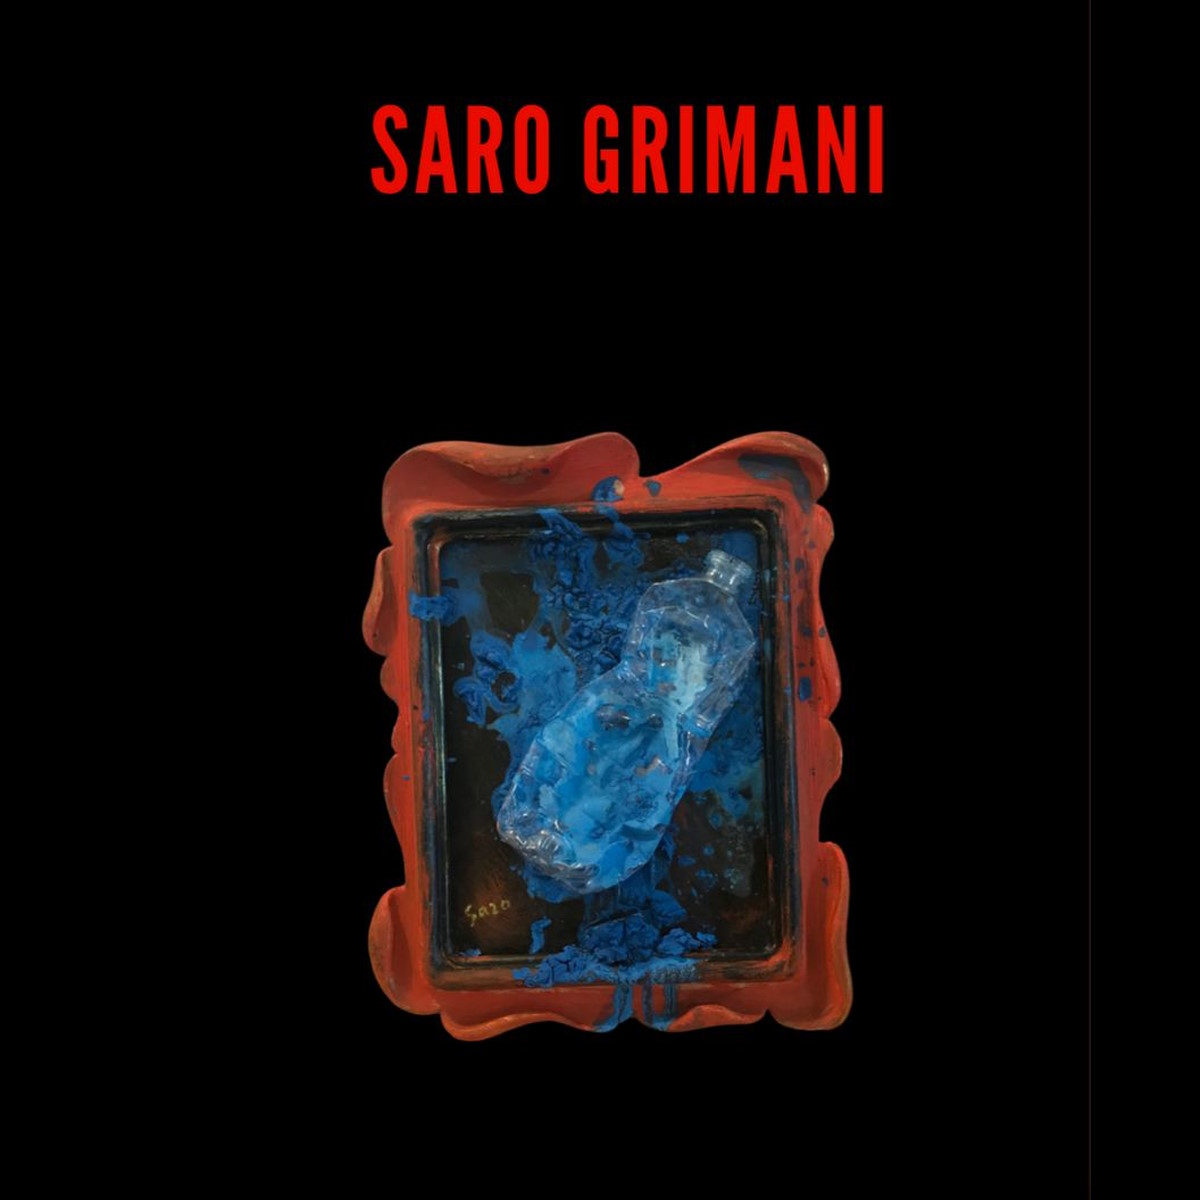 Save the Planet | L’opera di Saro Grimani che ha inaugurato un ciclo